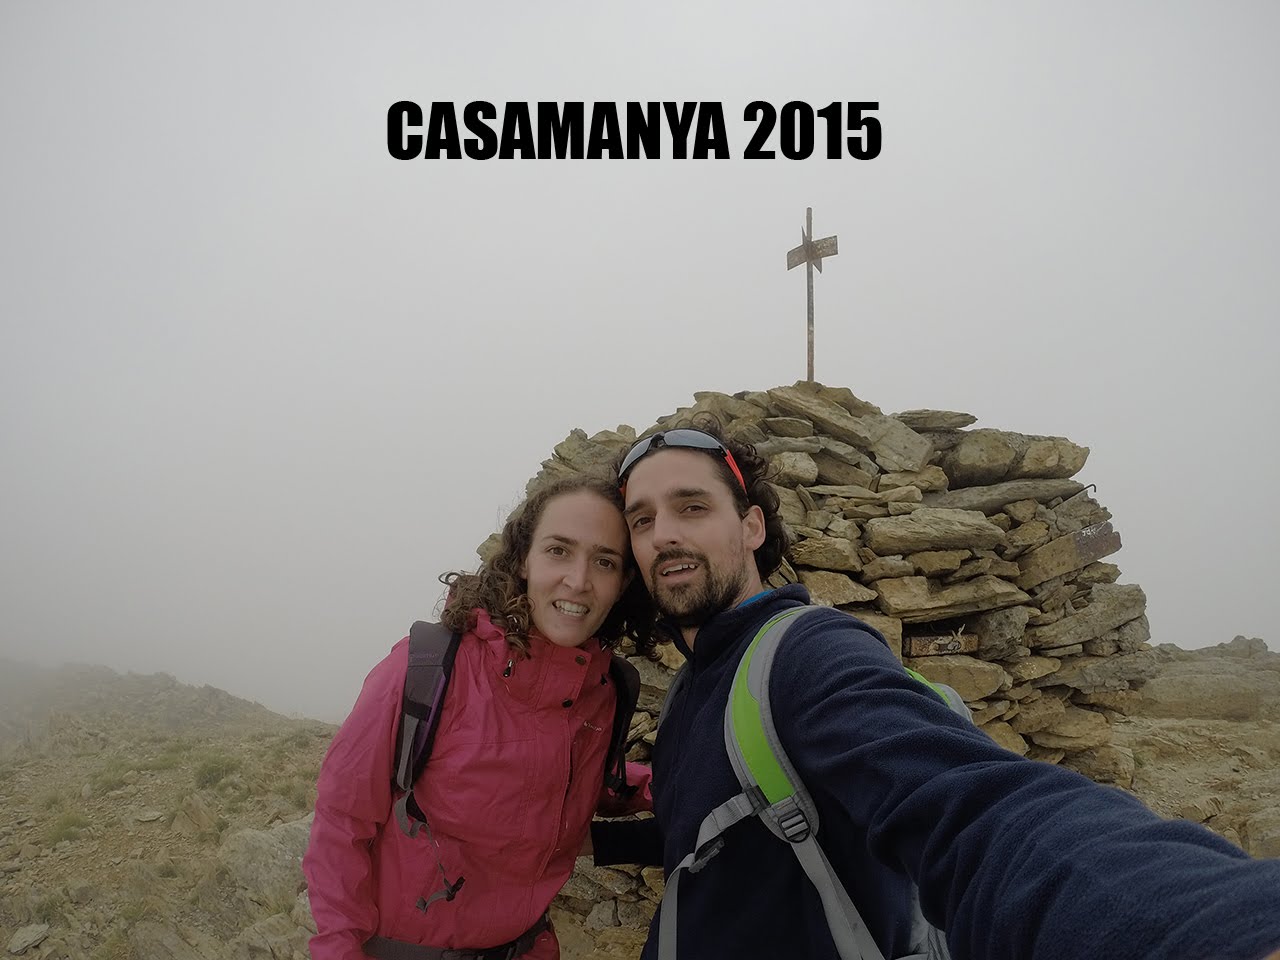 Pujada al Pic del Casamanya - Ordino Andorra 2015 de Dev Id